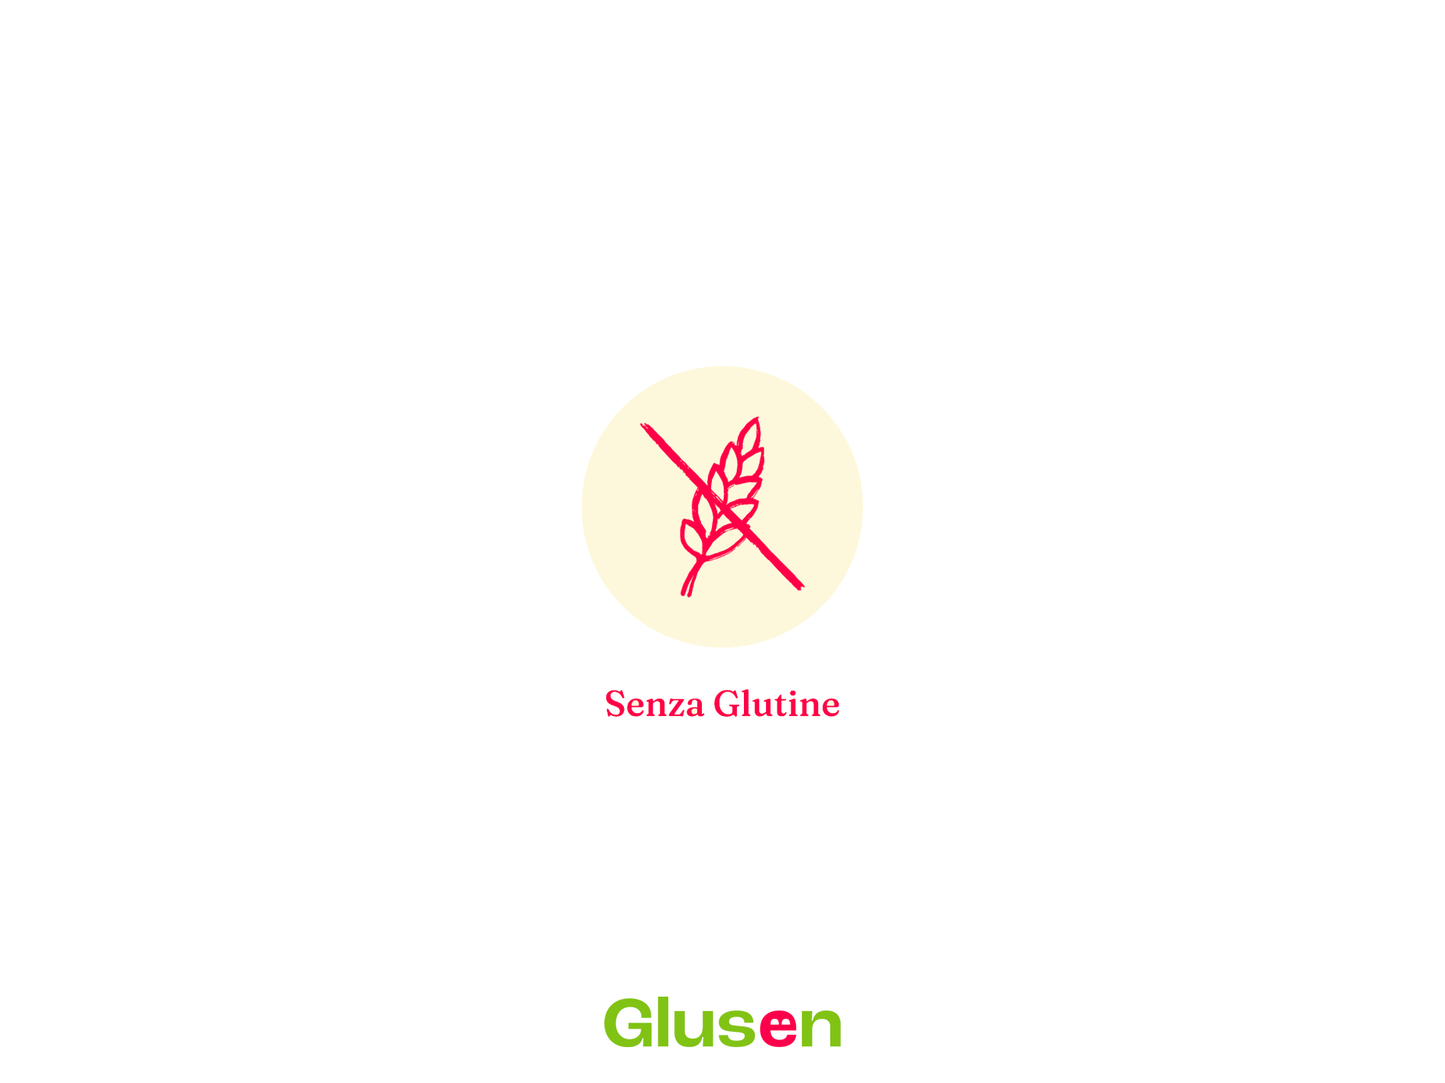 Bio Mais snack mini Gallette al Rosmarino 50g Senza Glutine